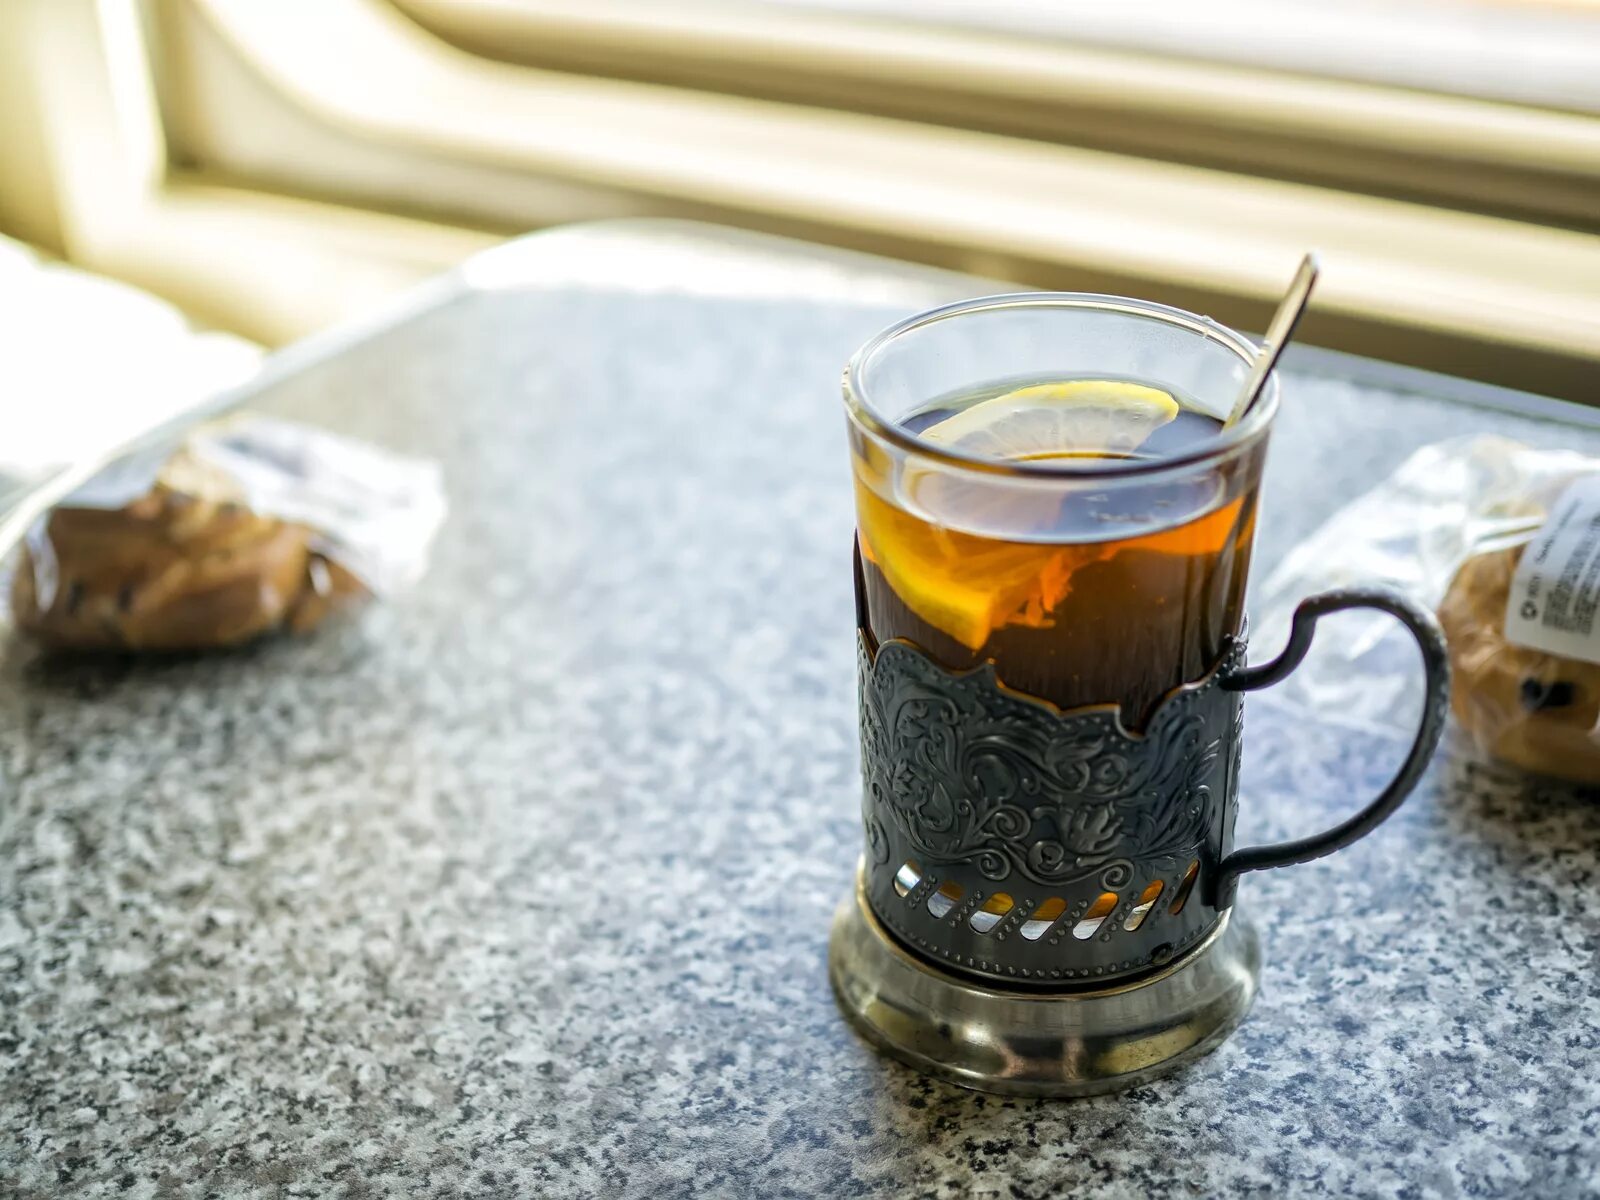 Чай со стаканом. Чай в подстаканнике. Чай в подстаканнике в поезде. Чай в стакане. Чай в стакане с подстаканником.